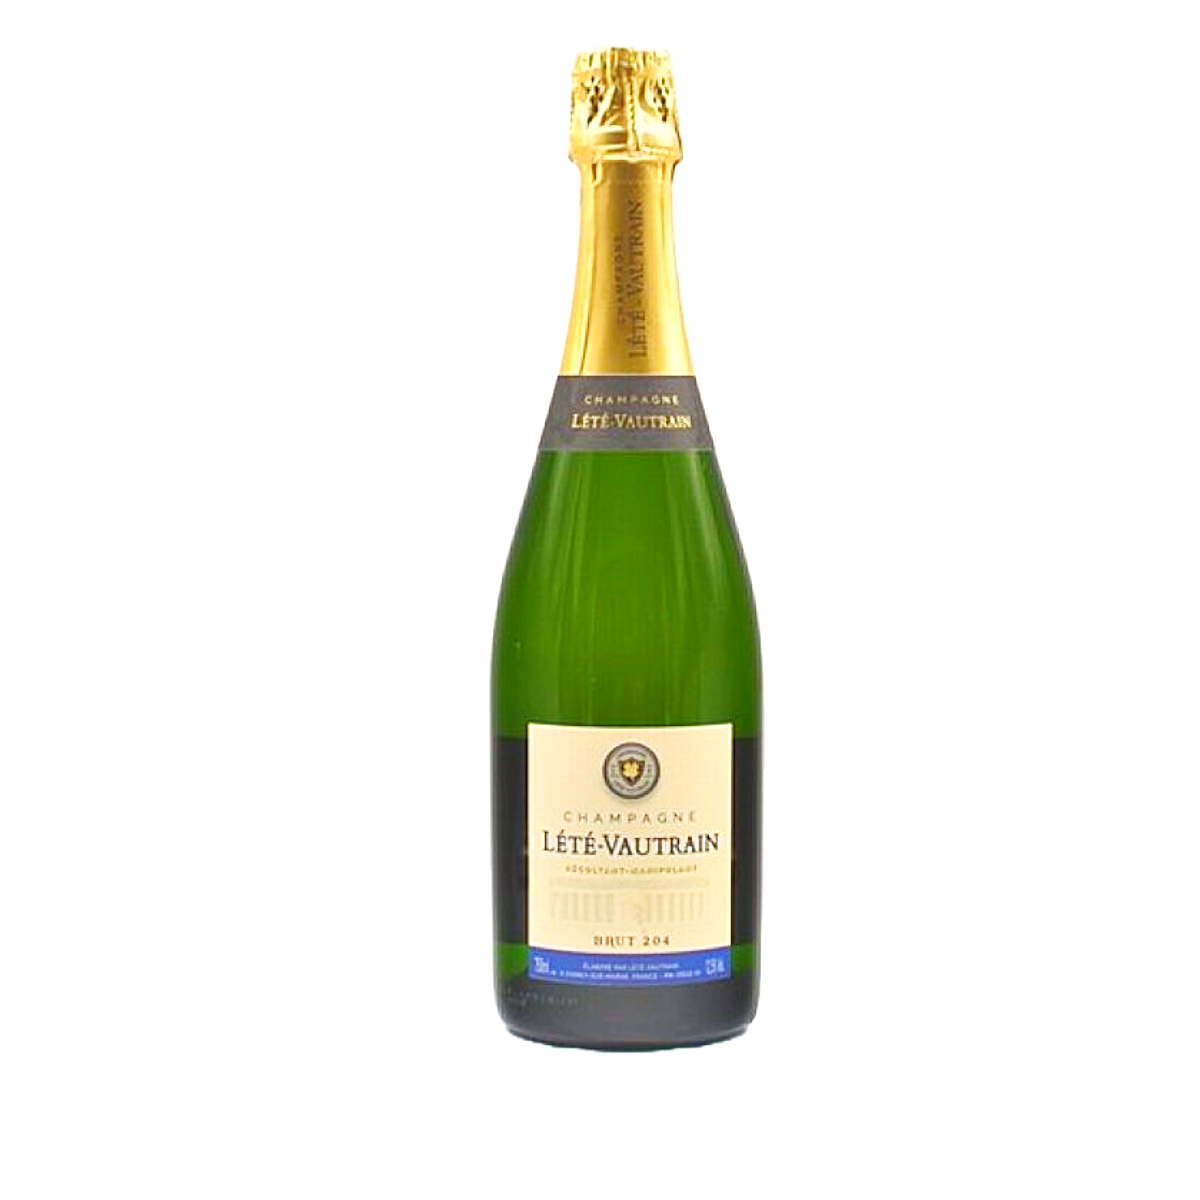 Champagne Lété-Vautrain Brut 204 NV